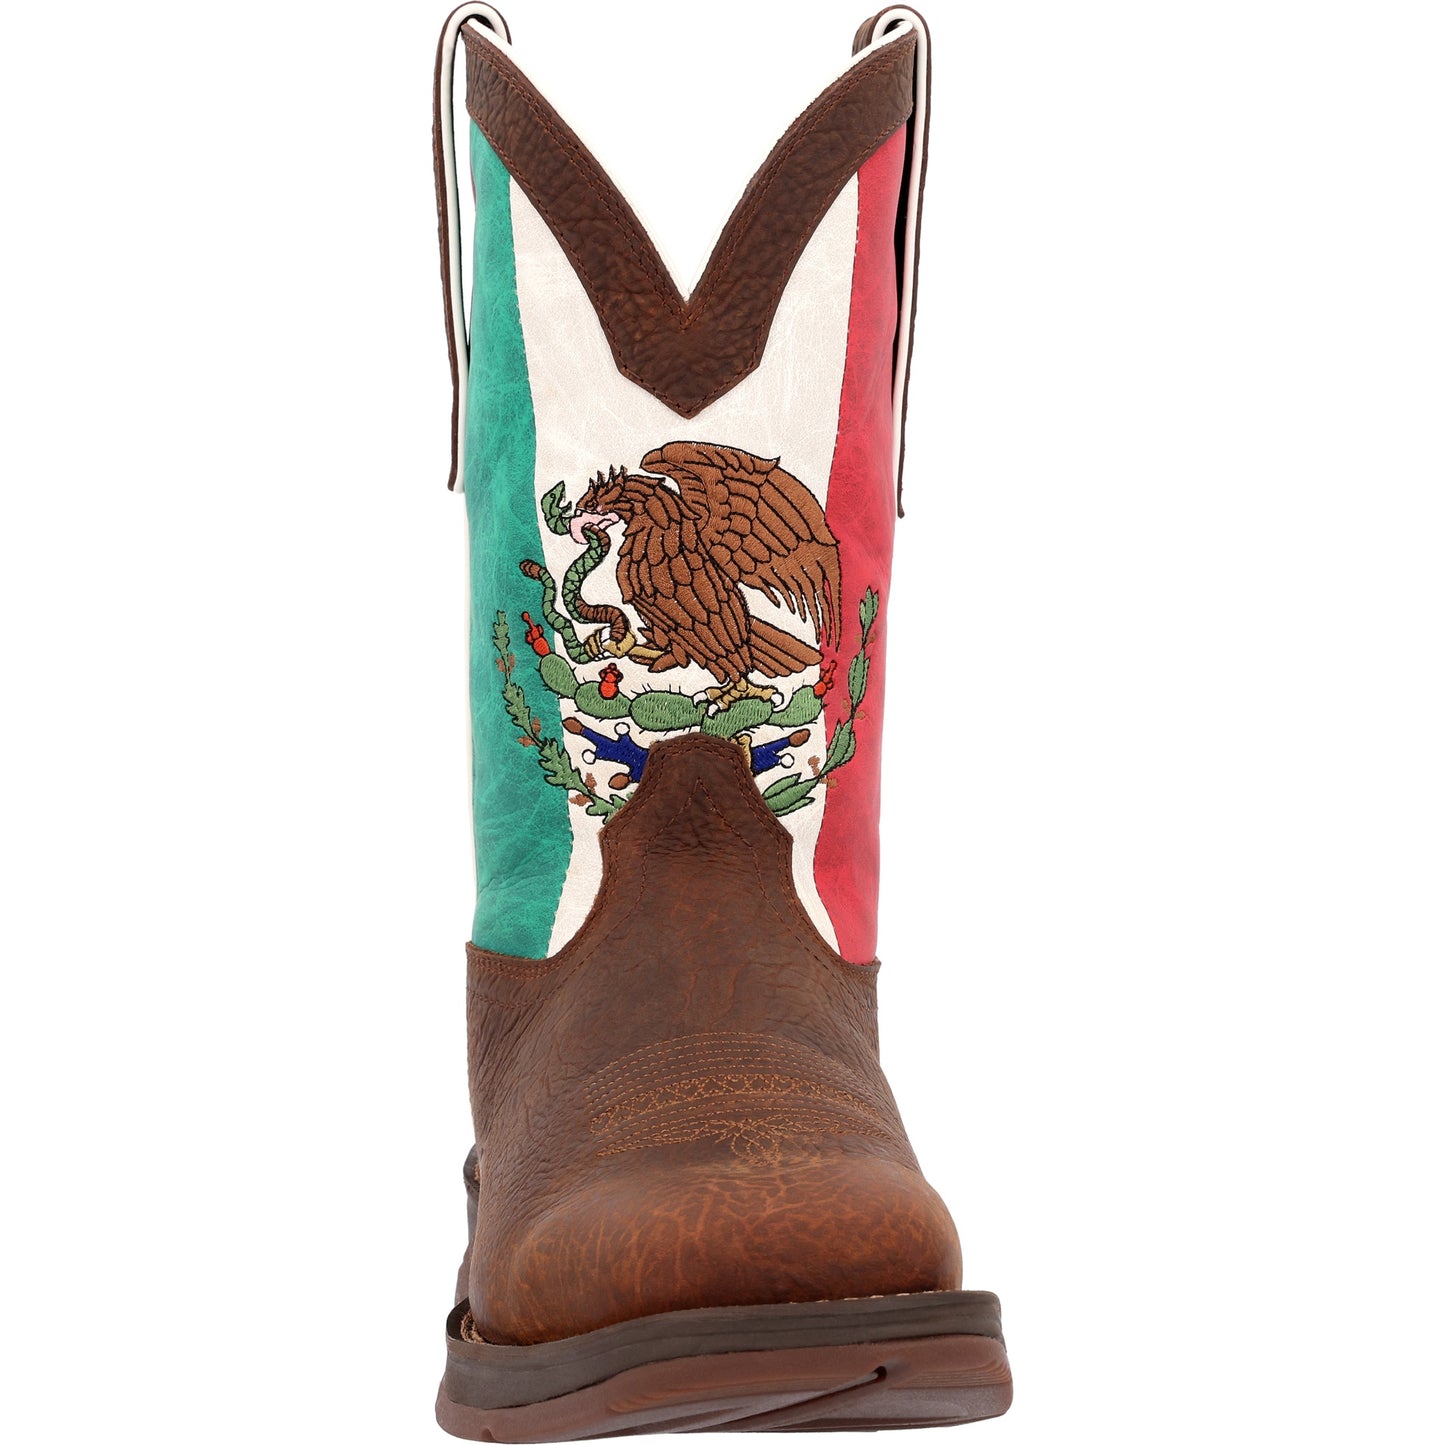 DURANGO MEN MEXICO FLAG WESTERN BOOT